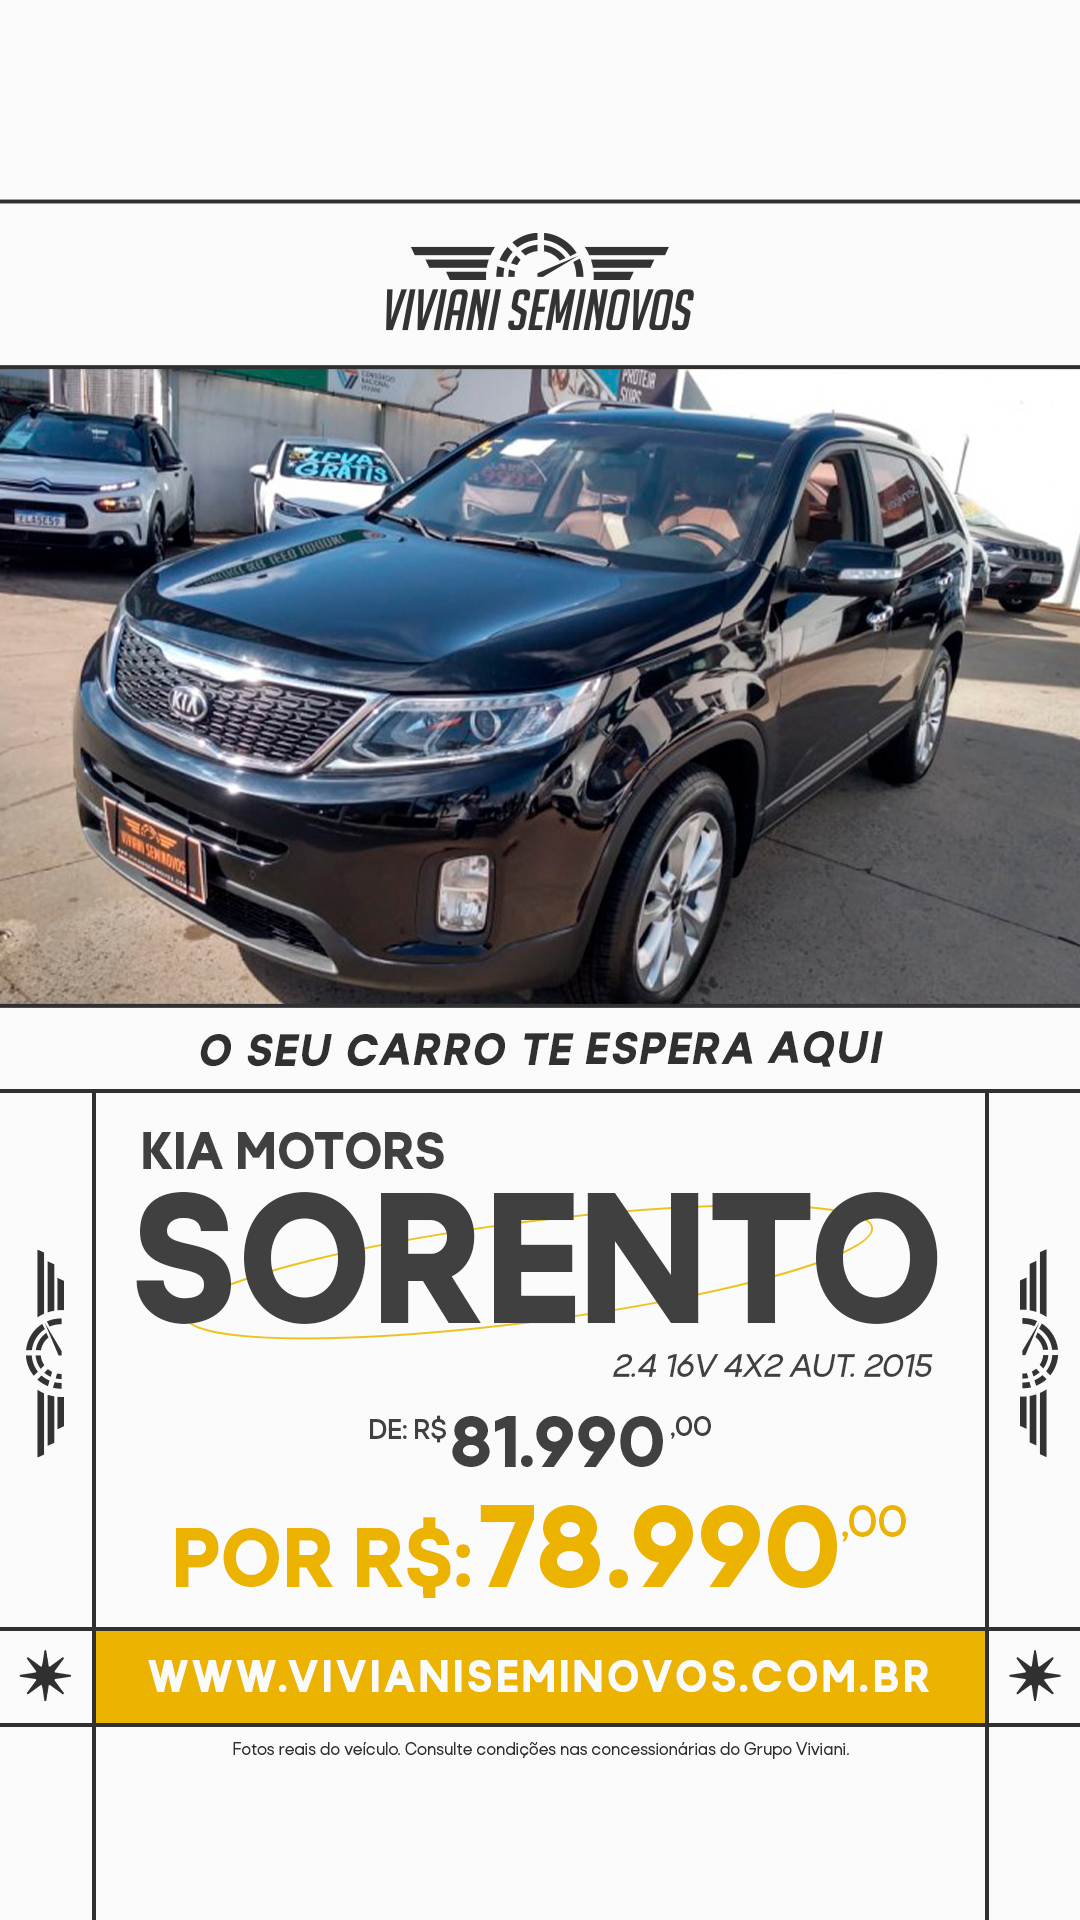 Kia Motors Sorento 2.4 16V 4x2 Aut.